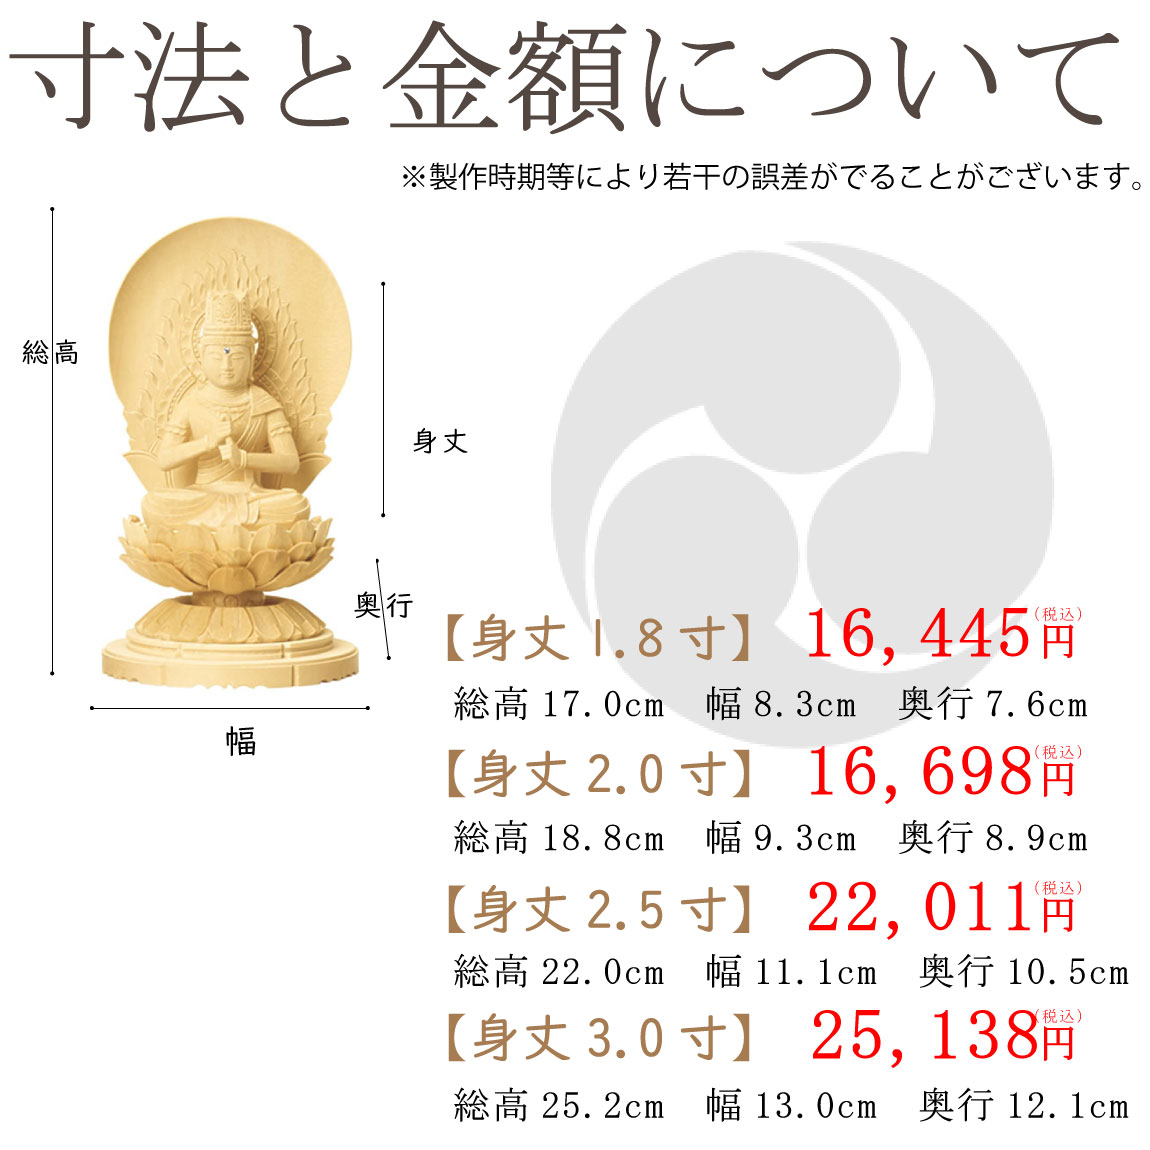 真言宗の仏像（丸台座）の寸法と価格